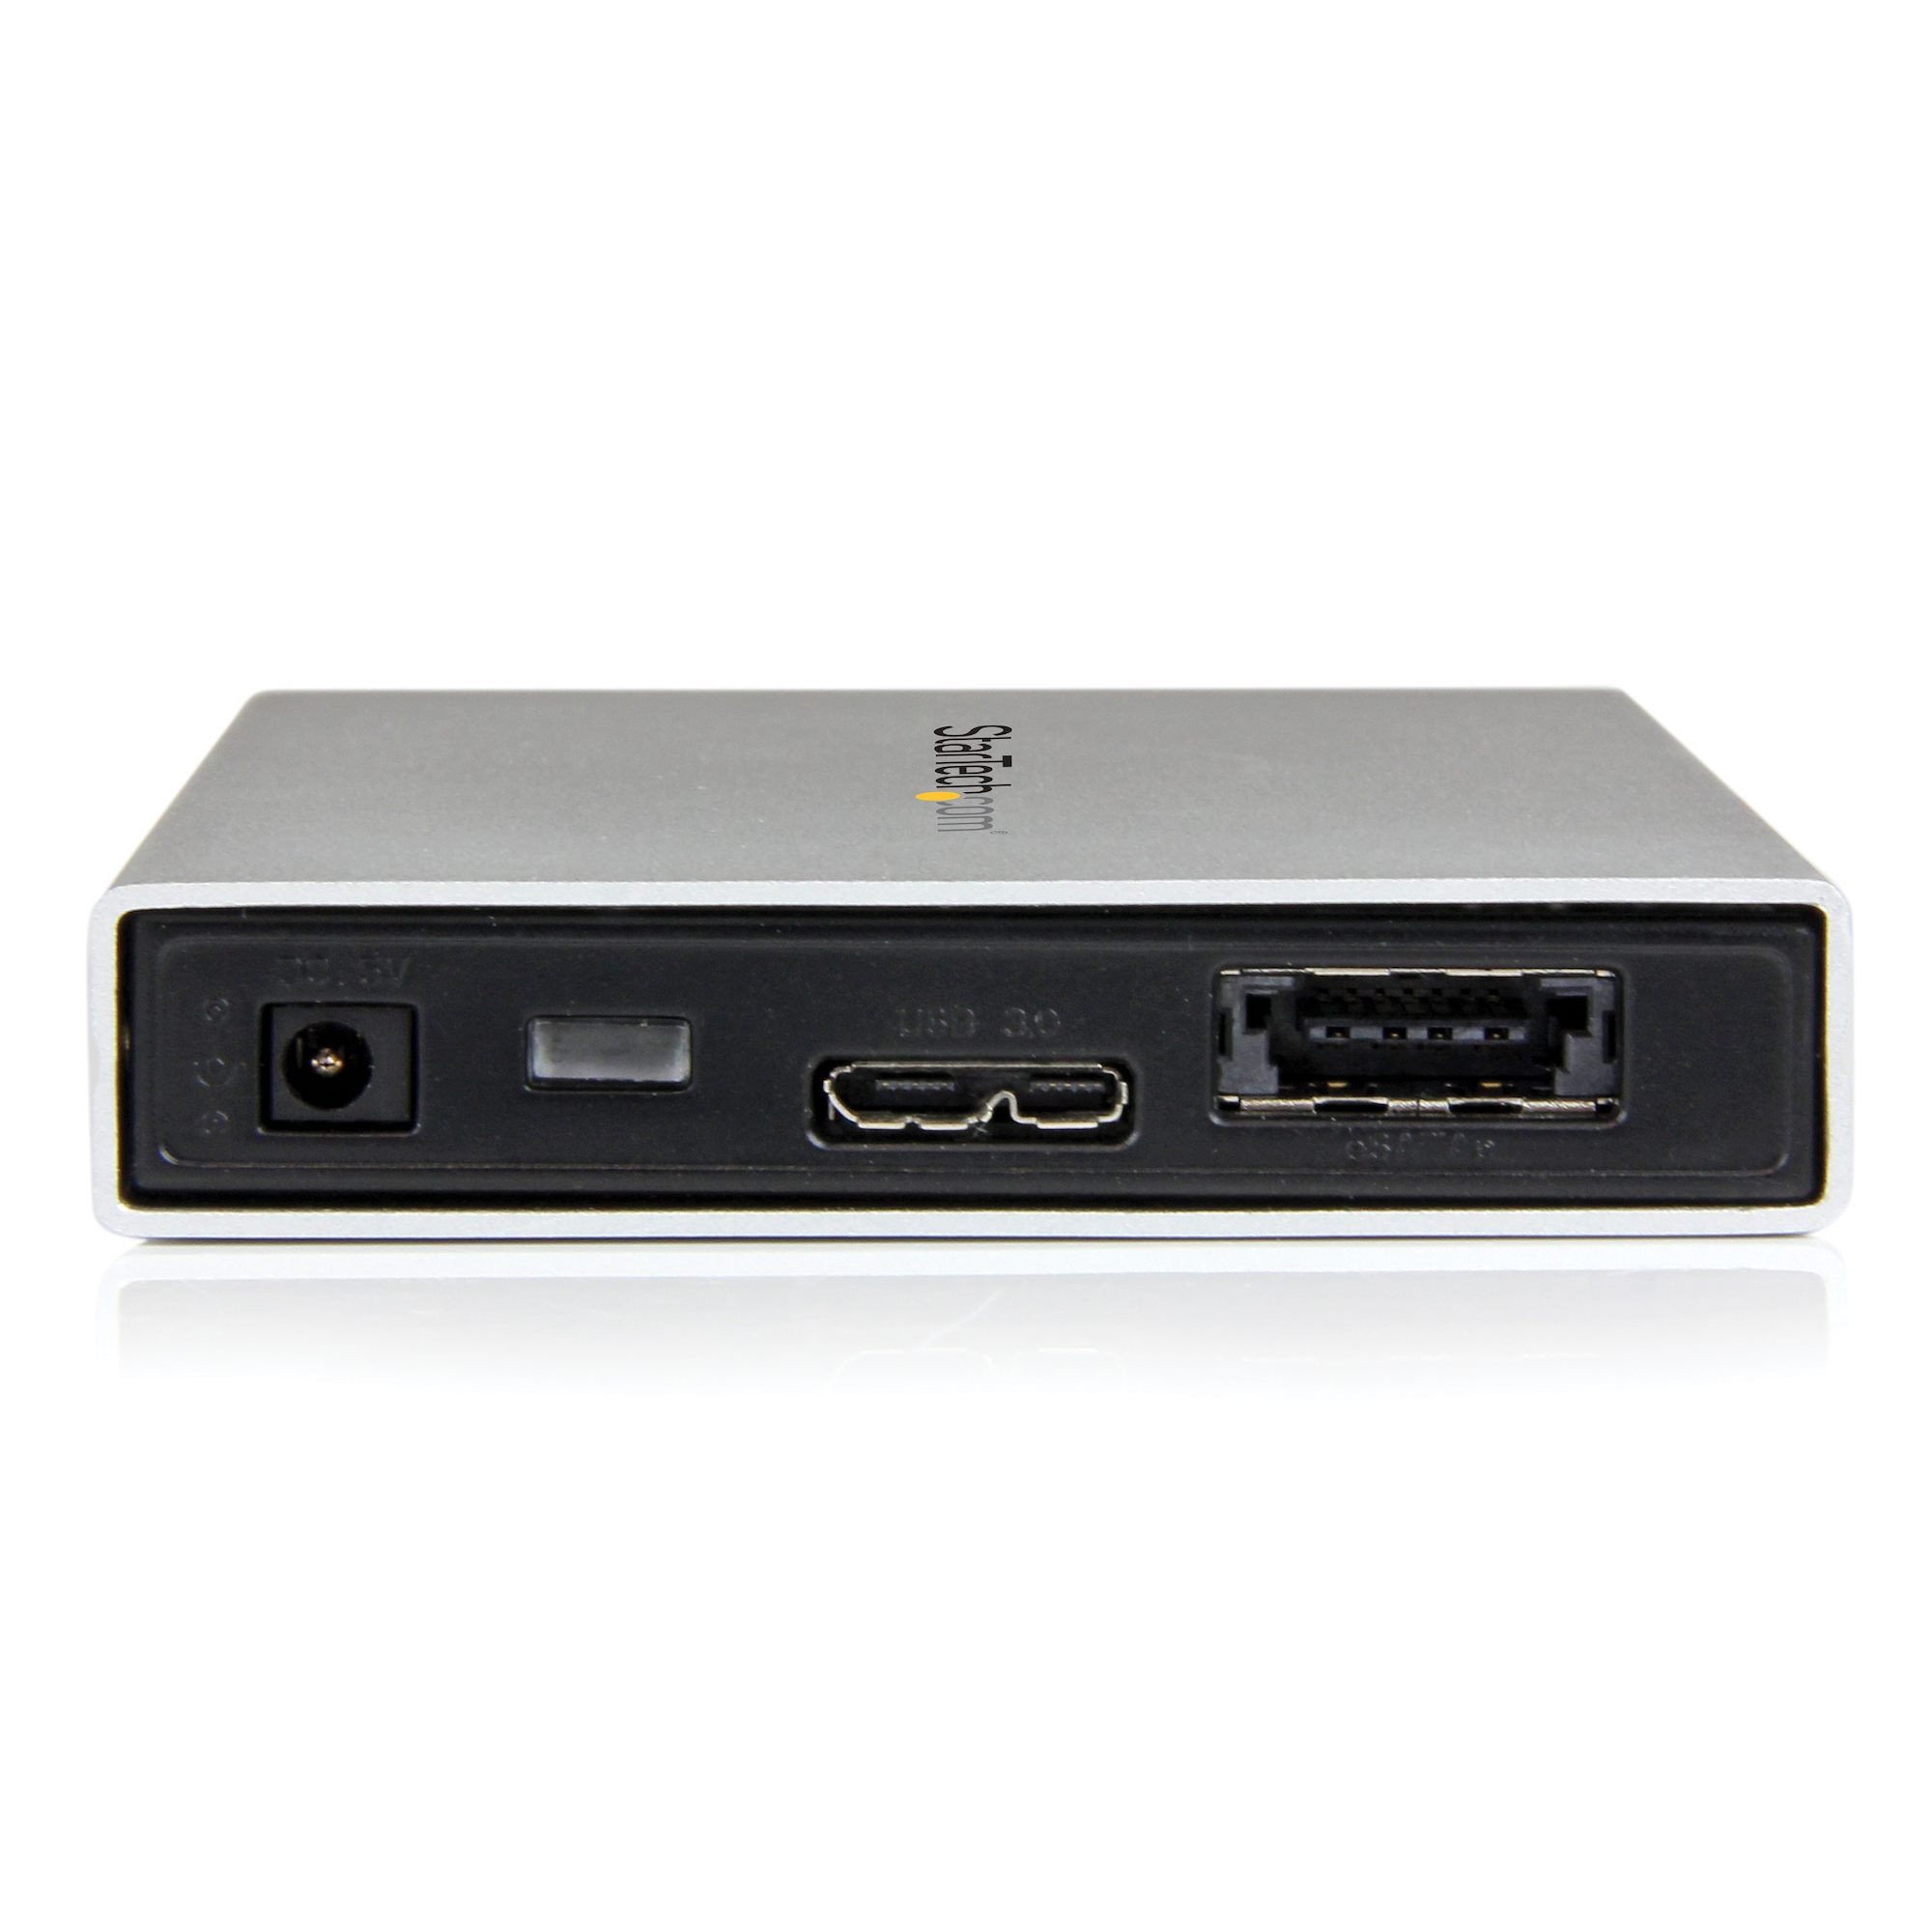 StarTech.com Boîtier Externe pour Disque Dur 2.5 SATA III et SSD sur port  USB 3.0 avec Support UASP - ref: S2510BPU33 Adaptateurs de stockage Dispo